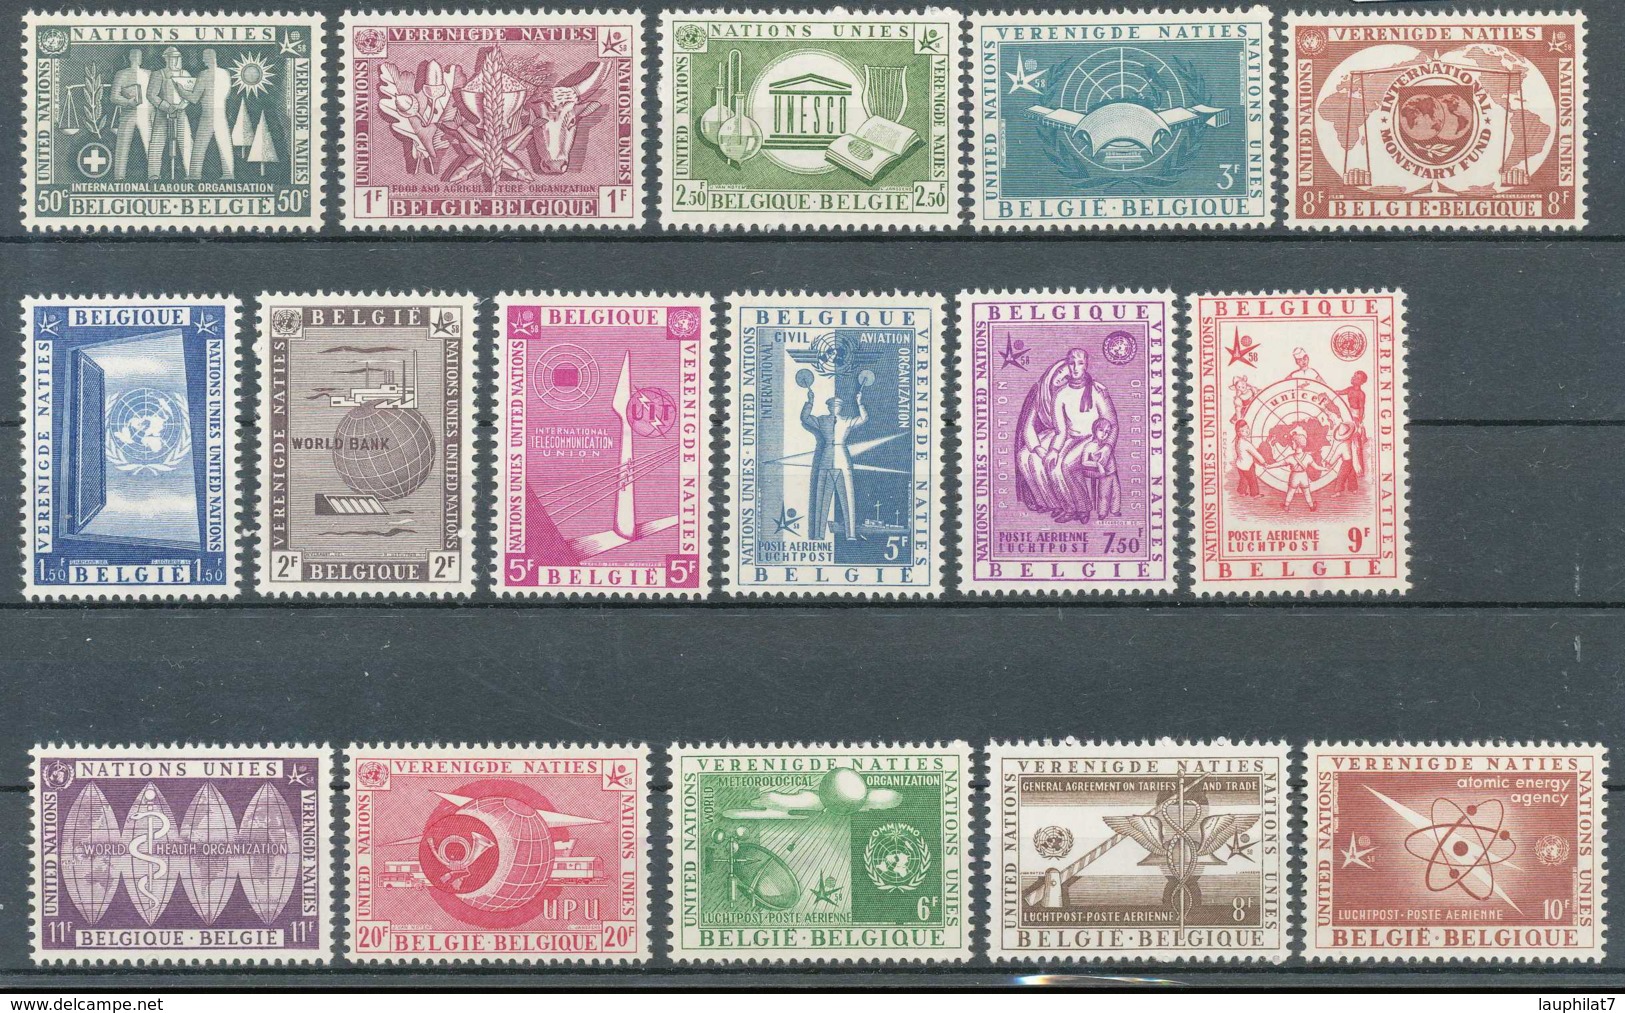 [600090]Belgique 1958, Exposition Universelle De Bruxelles 1958, Avec Aériens, Les 2 Séries Complètes - 1958 – Brüssel (Belgien)